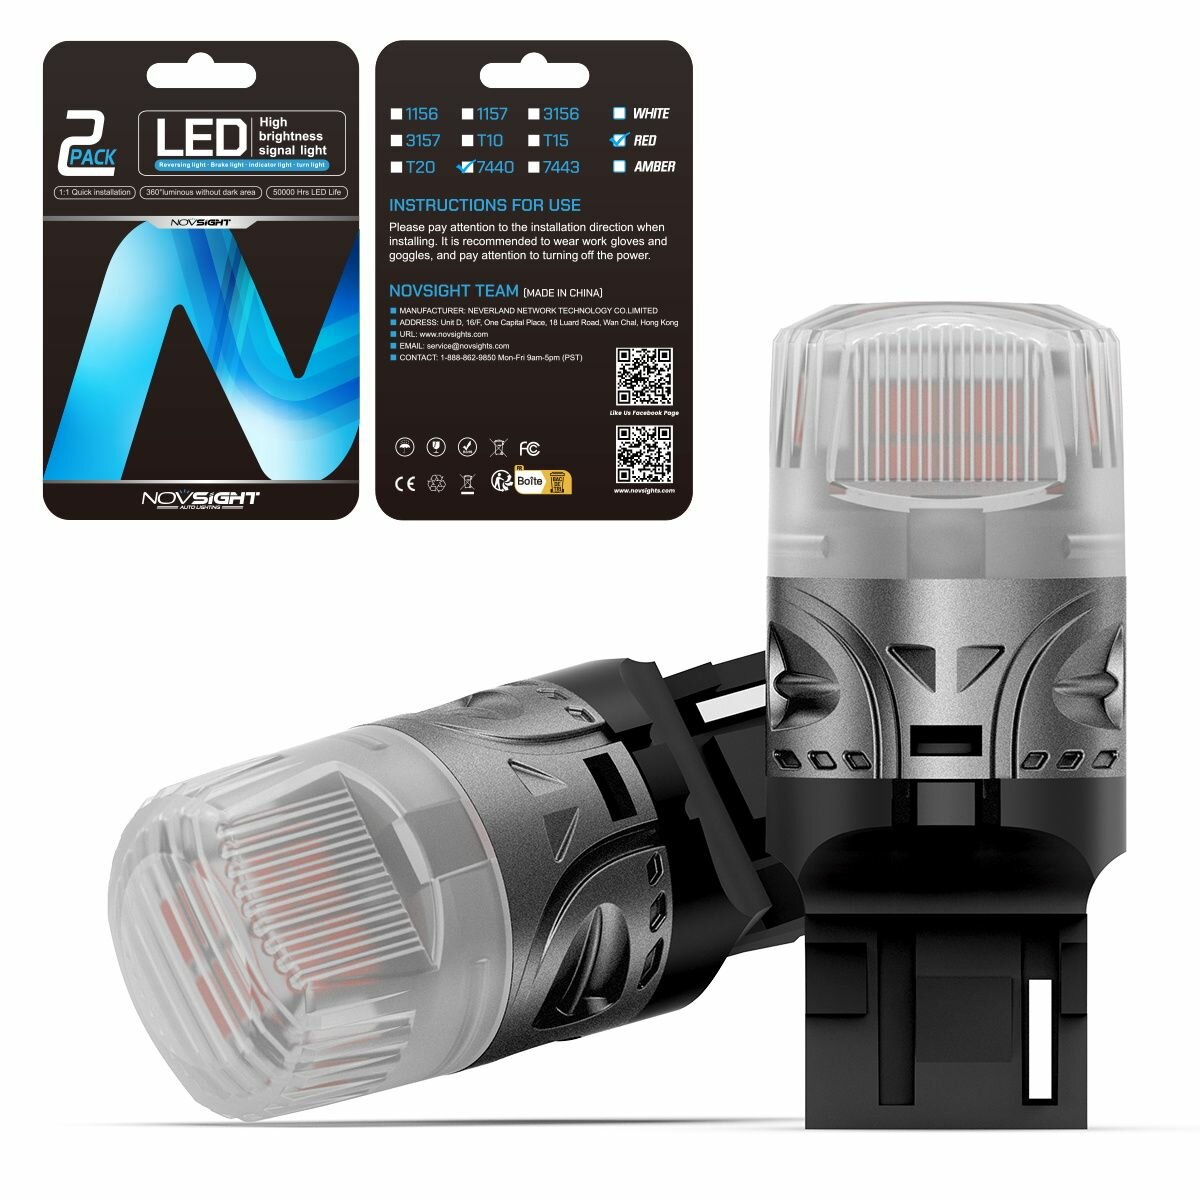 Светодиодная лампа Novsight SL9 цоколь T20 7440 W21W одноконтактная красный свет 2шт LED автомобильная